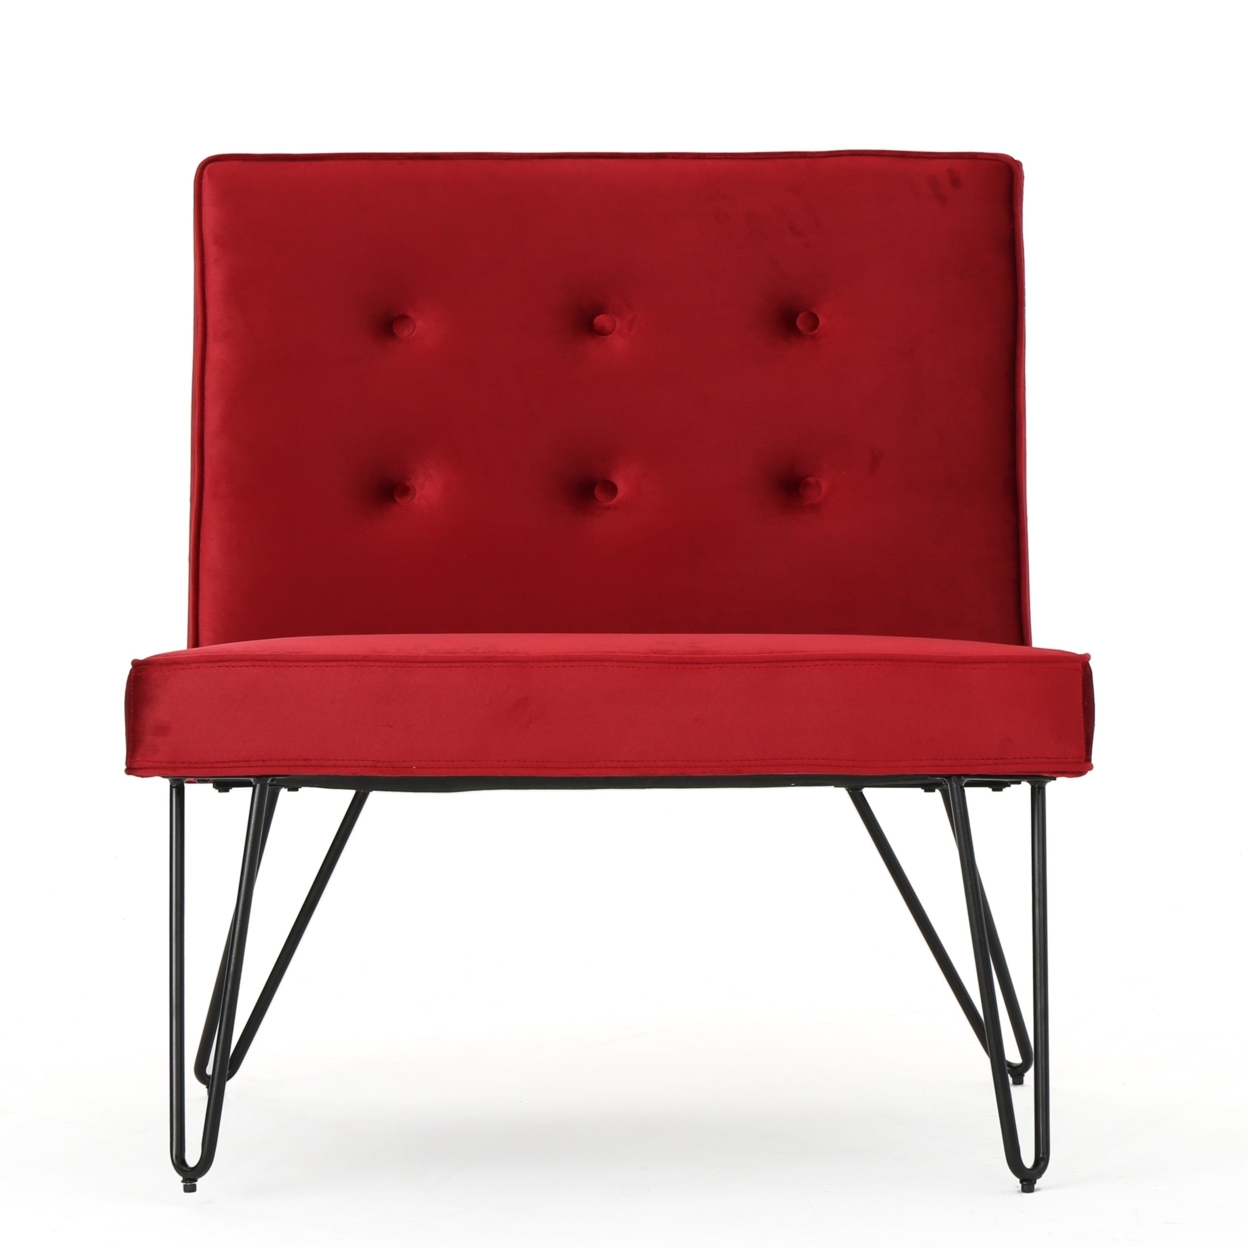 DuSoleil New Velvet Modern Armless Chair - Gray